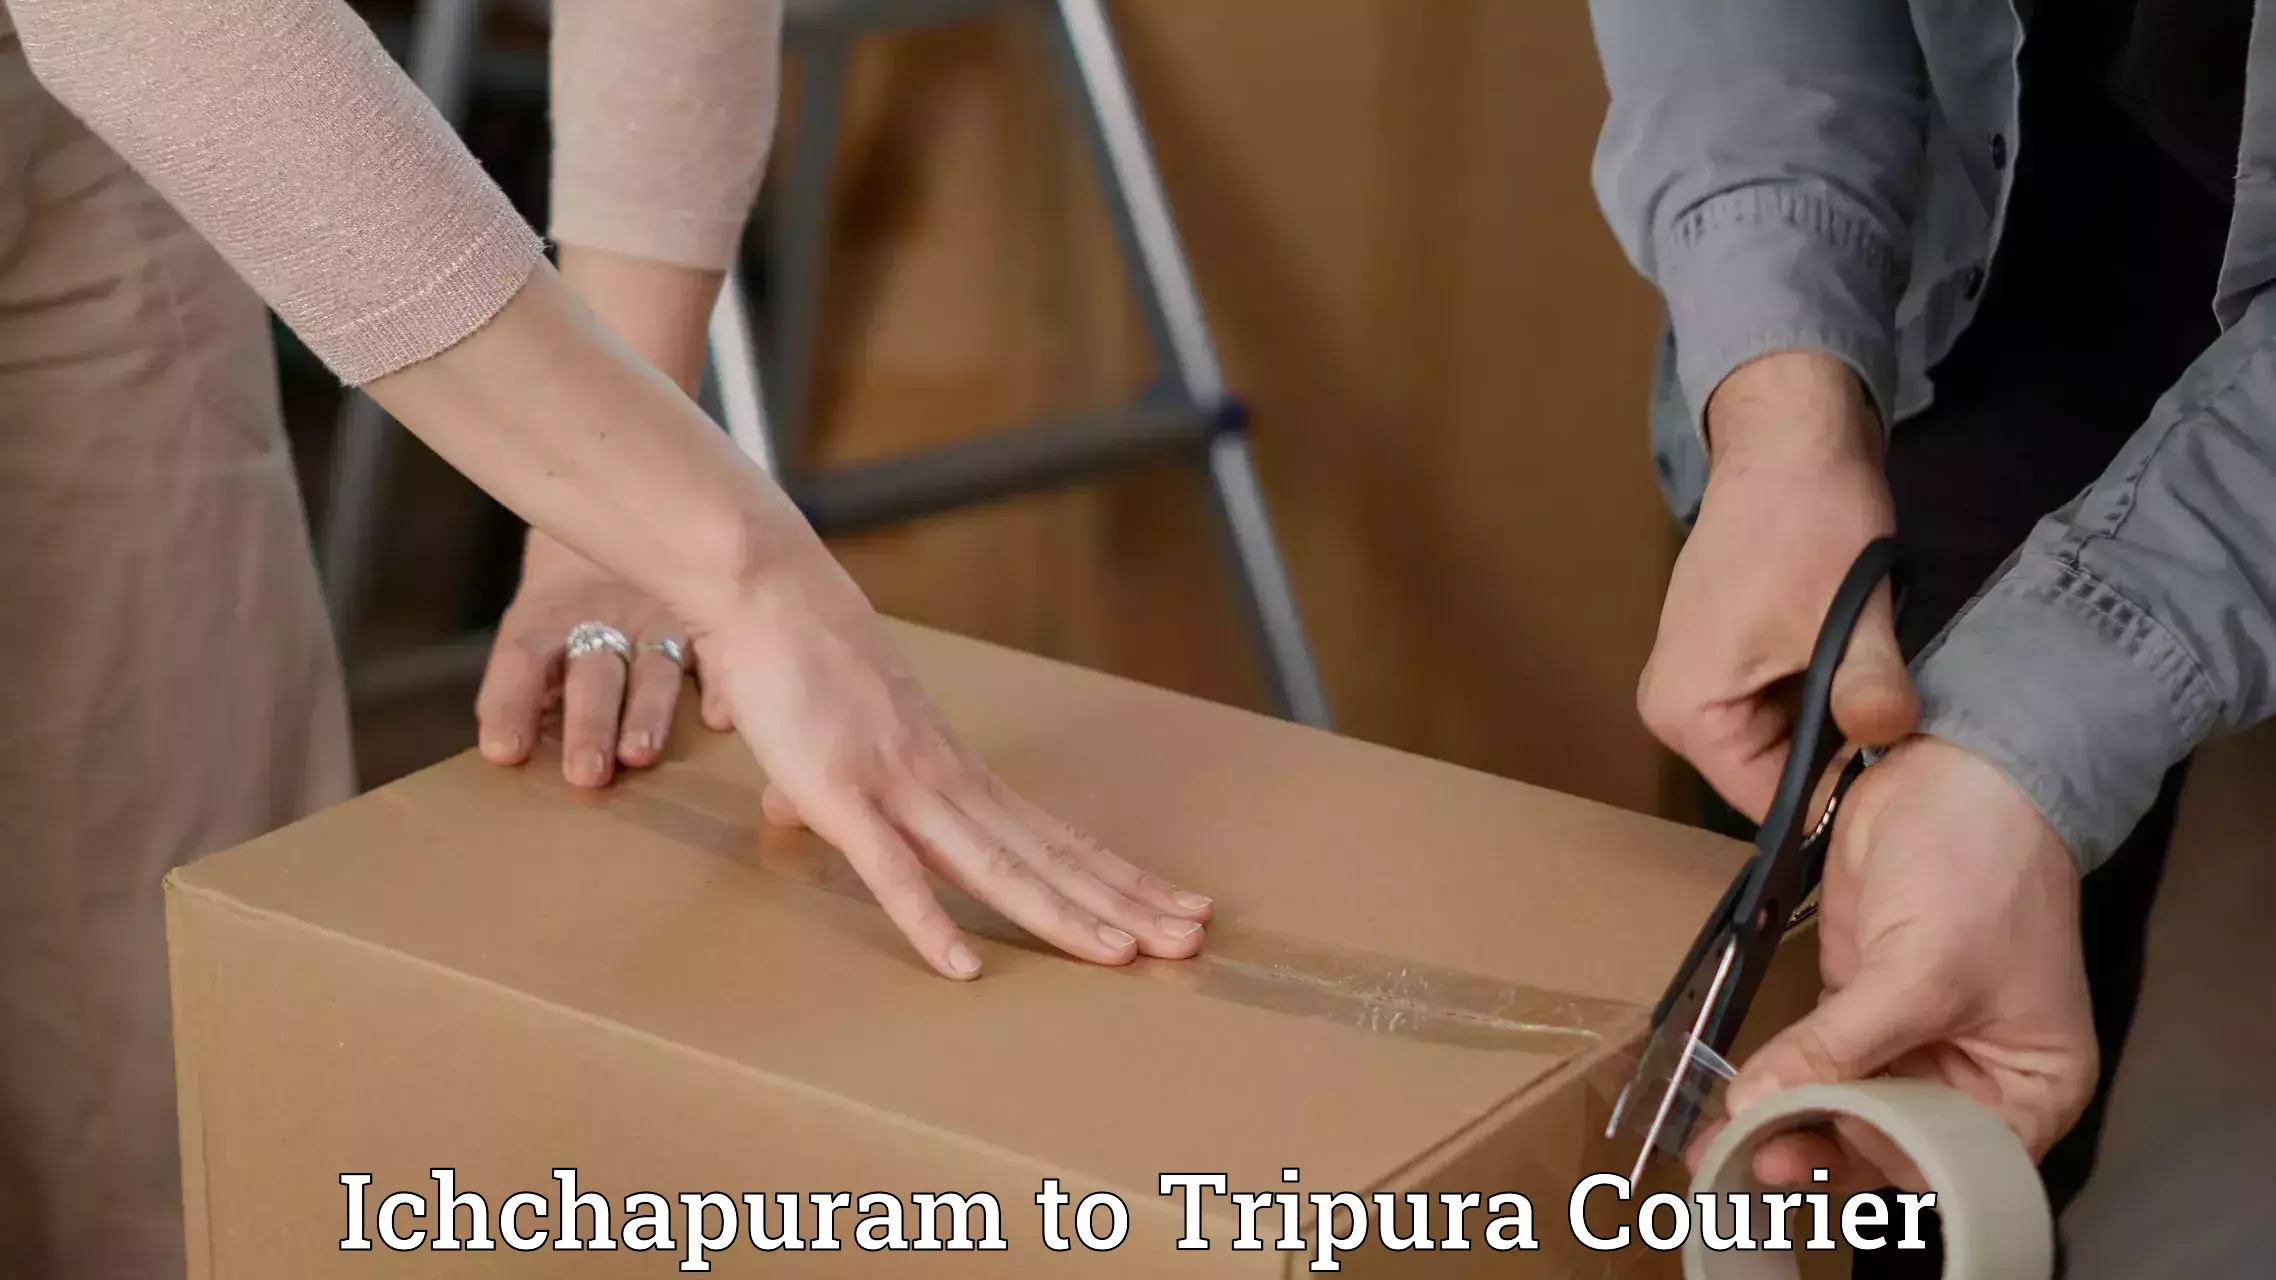 Easy access courier services Ichchapuram to Tripura